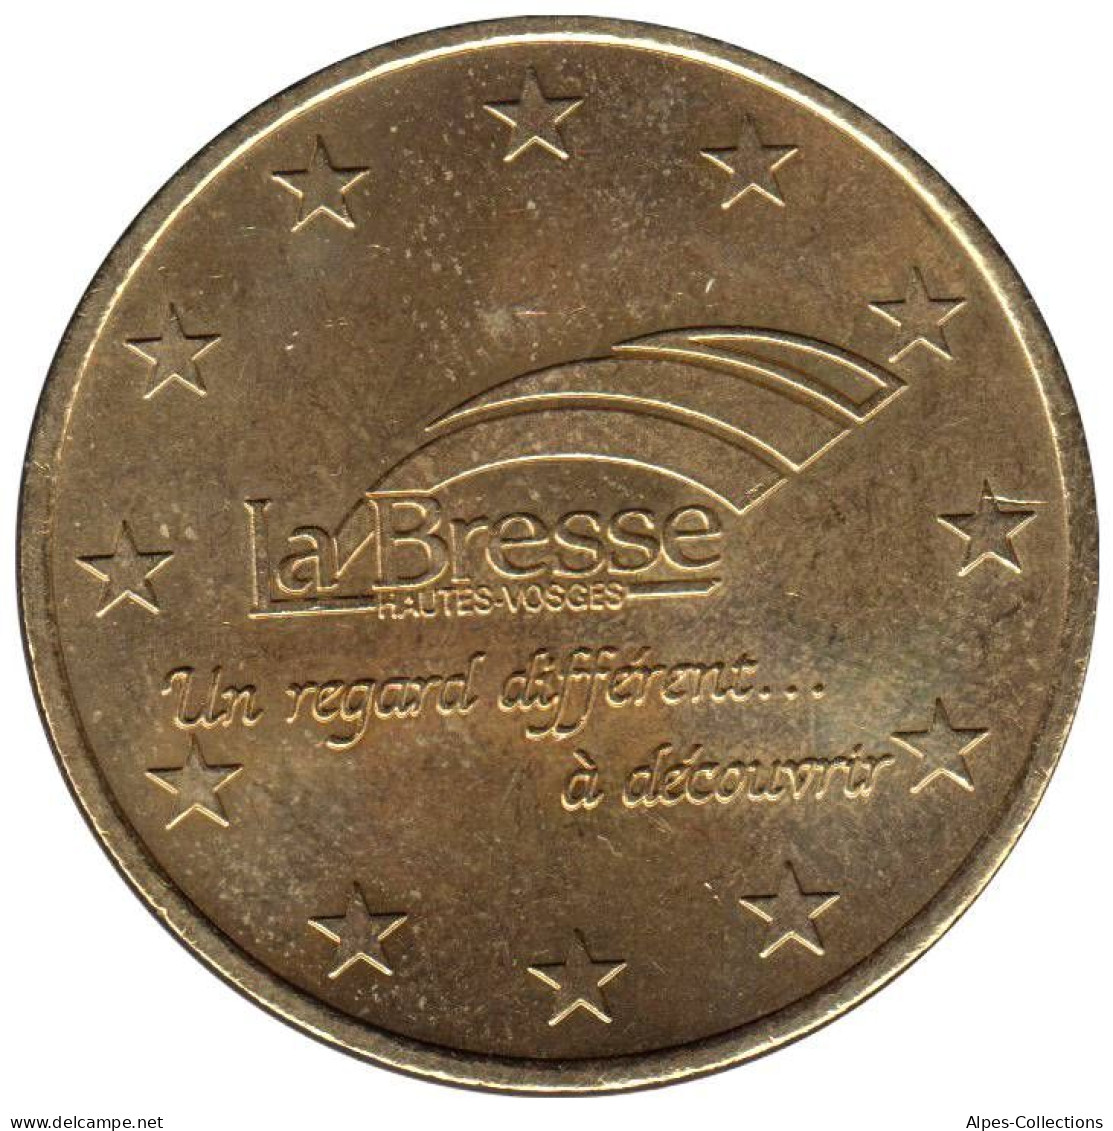 LA BRESSE - EU0010.1 - 1 EURO DES VILLES - Réf: T304 - 1997 - Euros Of The Cities